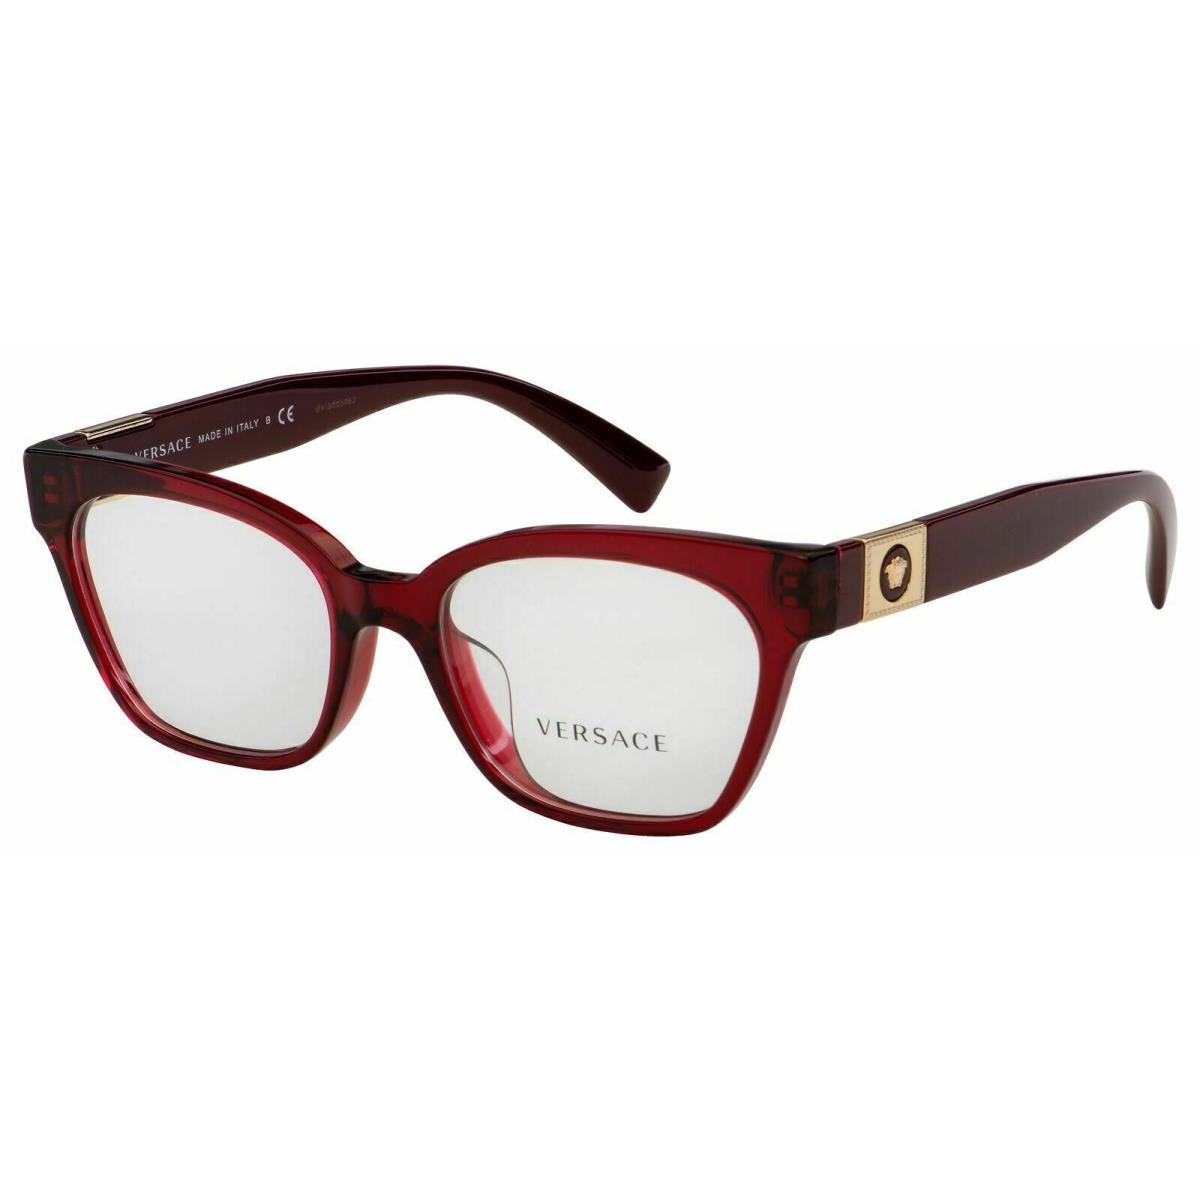 Versace Eyeglasses VE3294 388 51mm Transparent Bordeaux / Demo Lens